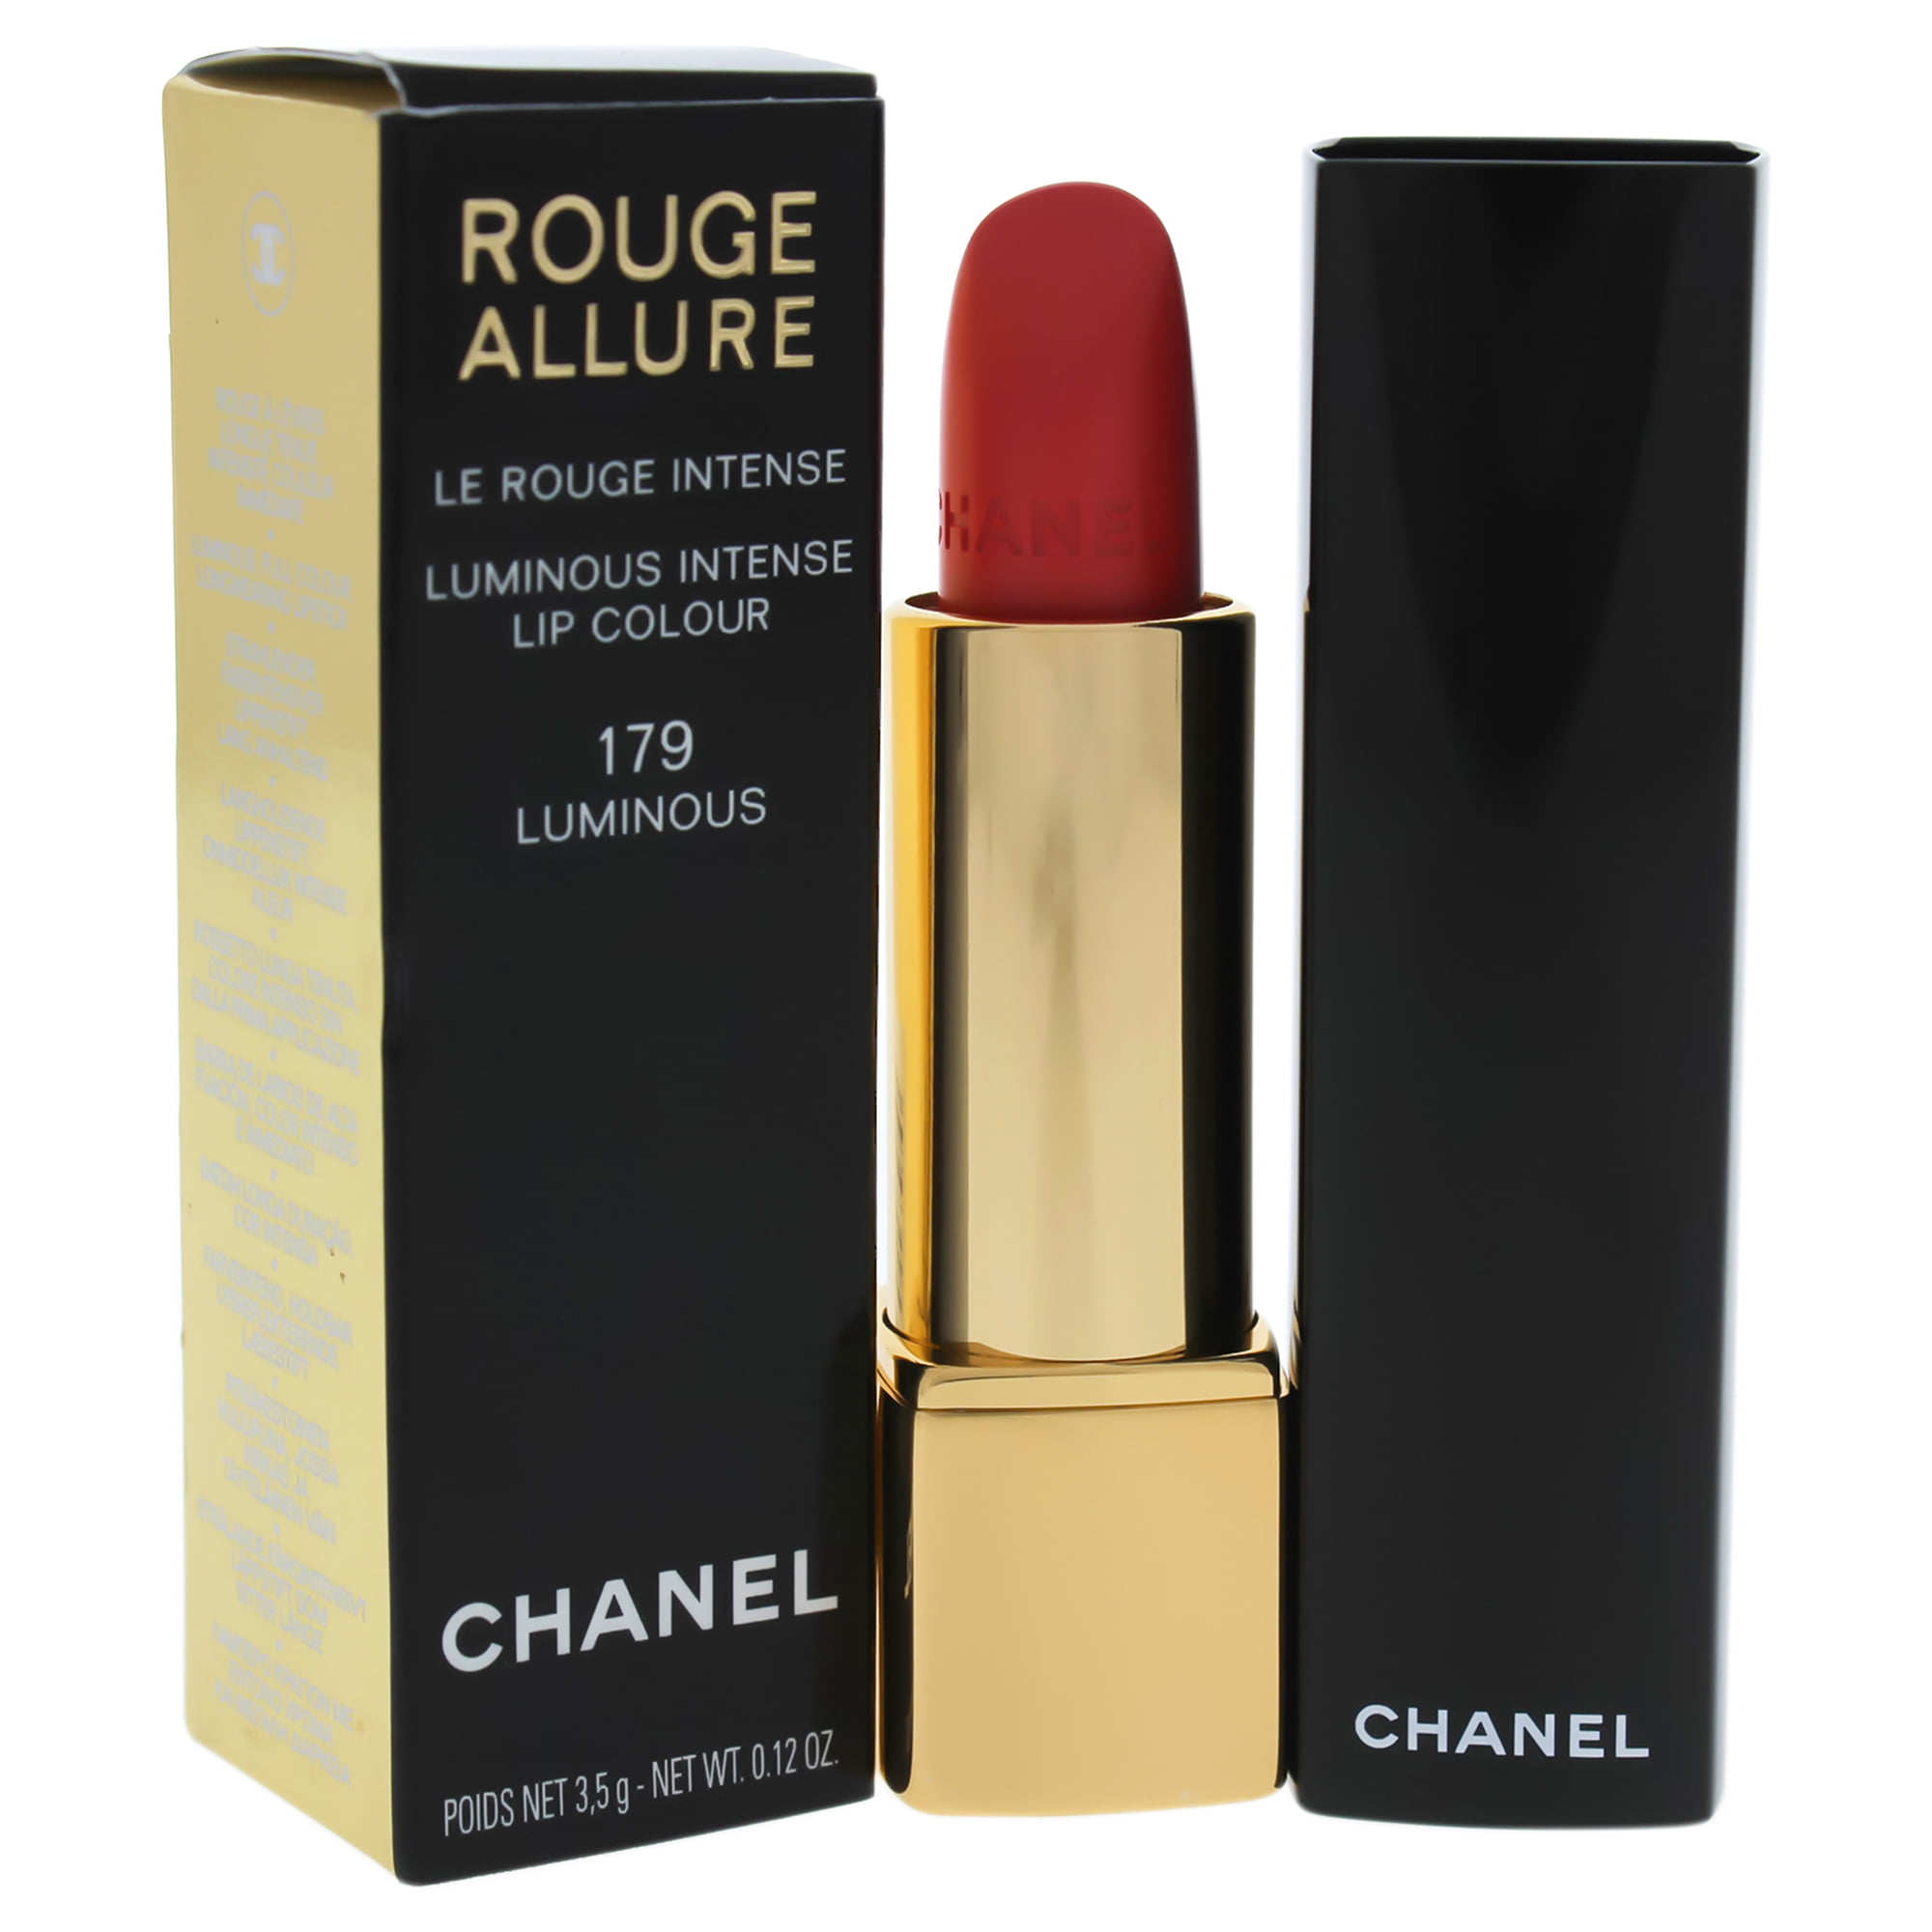 Rouge Allure Luminous Intense Lip Colour - 179 Luminous by Chanel for Women  - 0.40 oz Lipstick